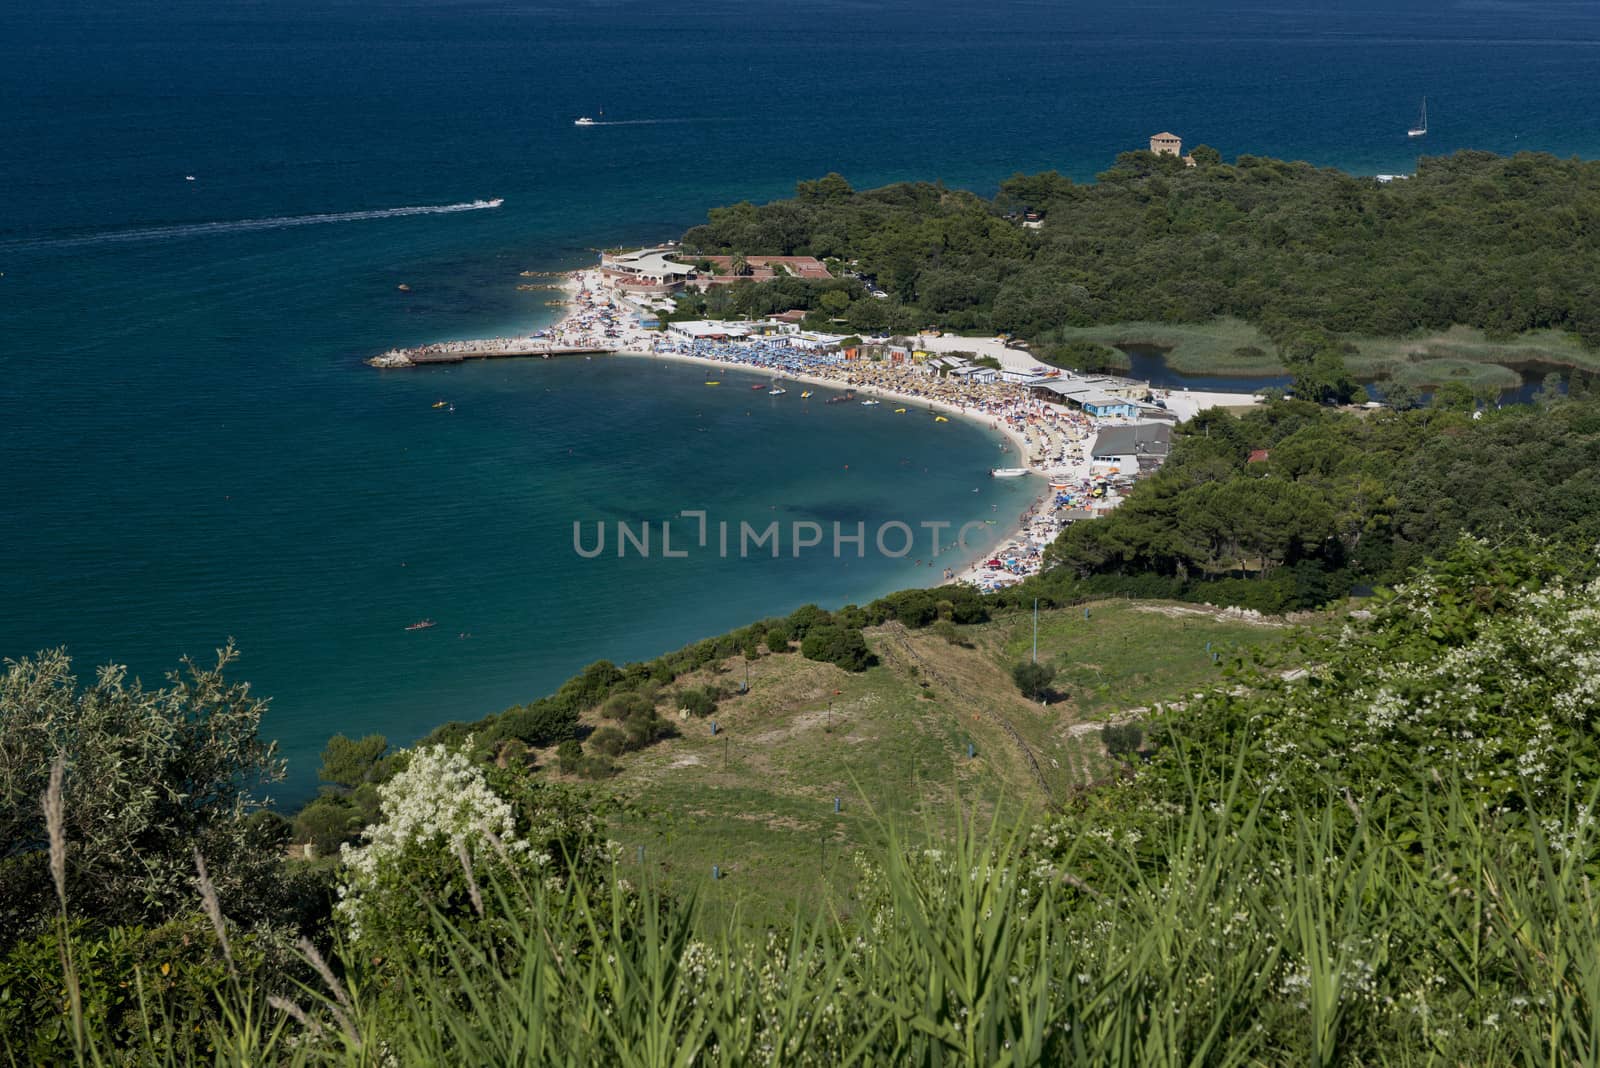 The bay of Portonovo in the Conero Riviera, Italy